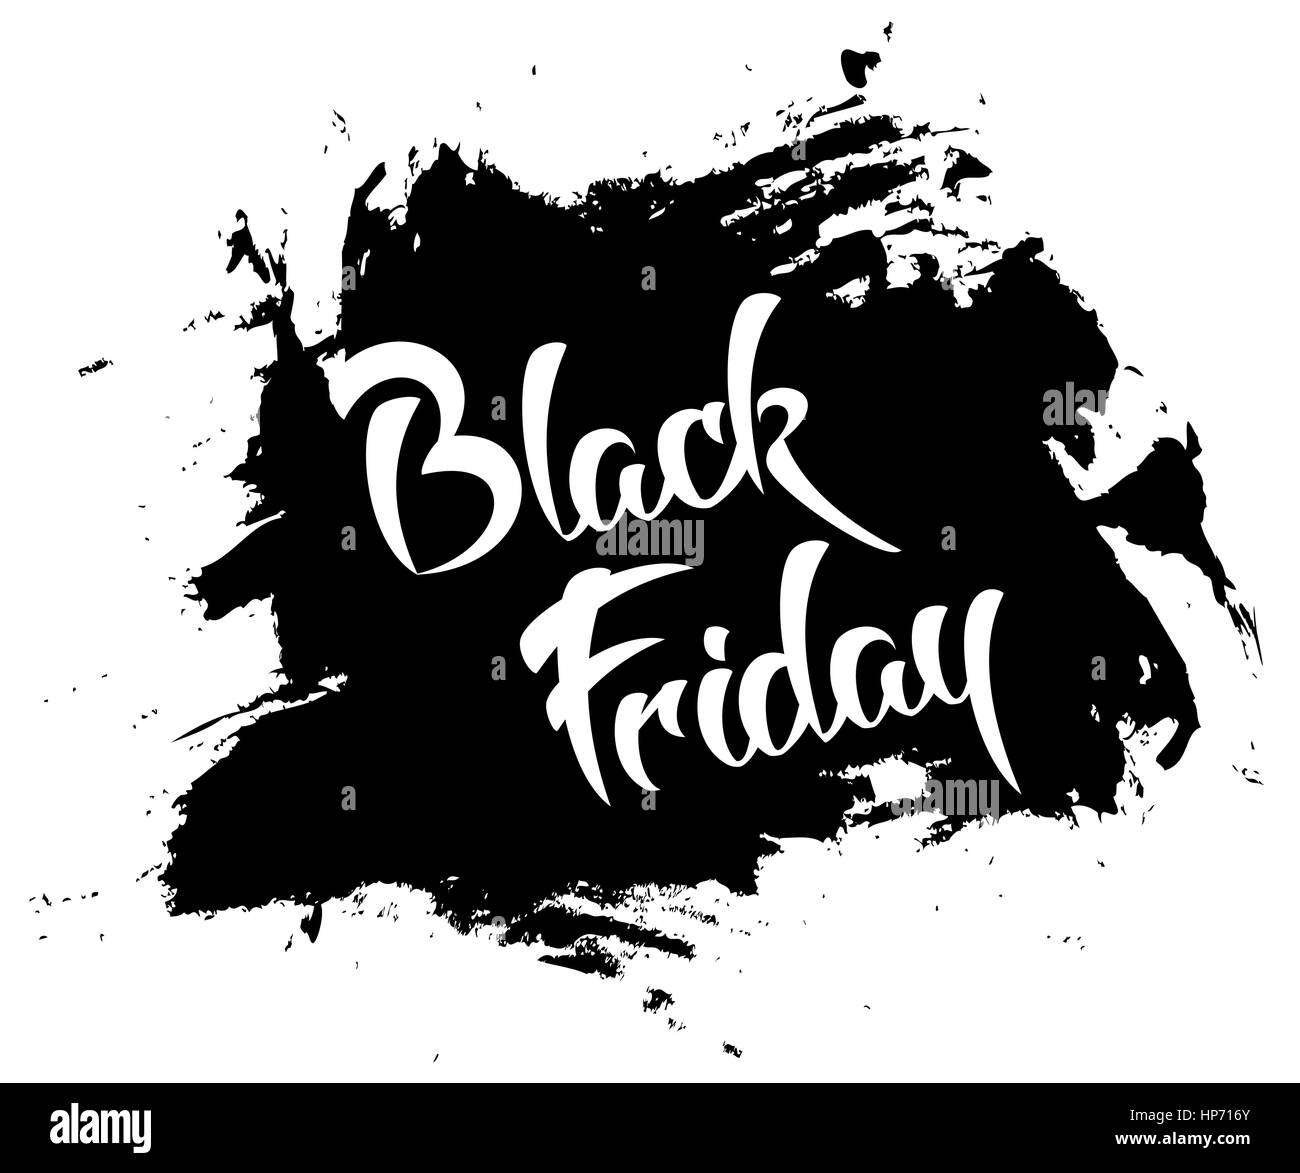 Black friday - handmade lettering on black grunge spot background, vector illustration, design template Stock Vector